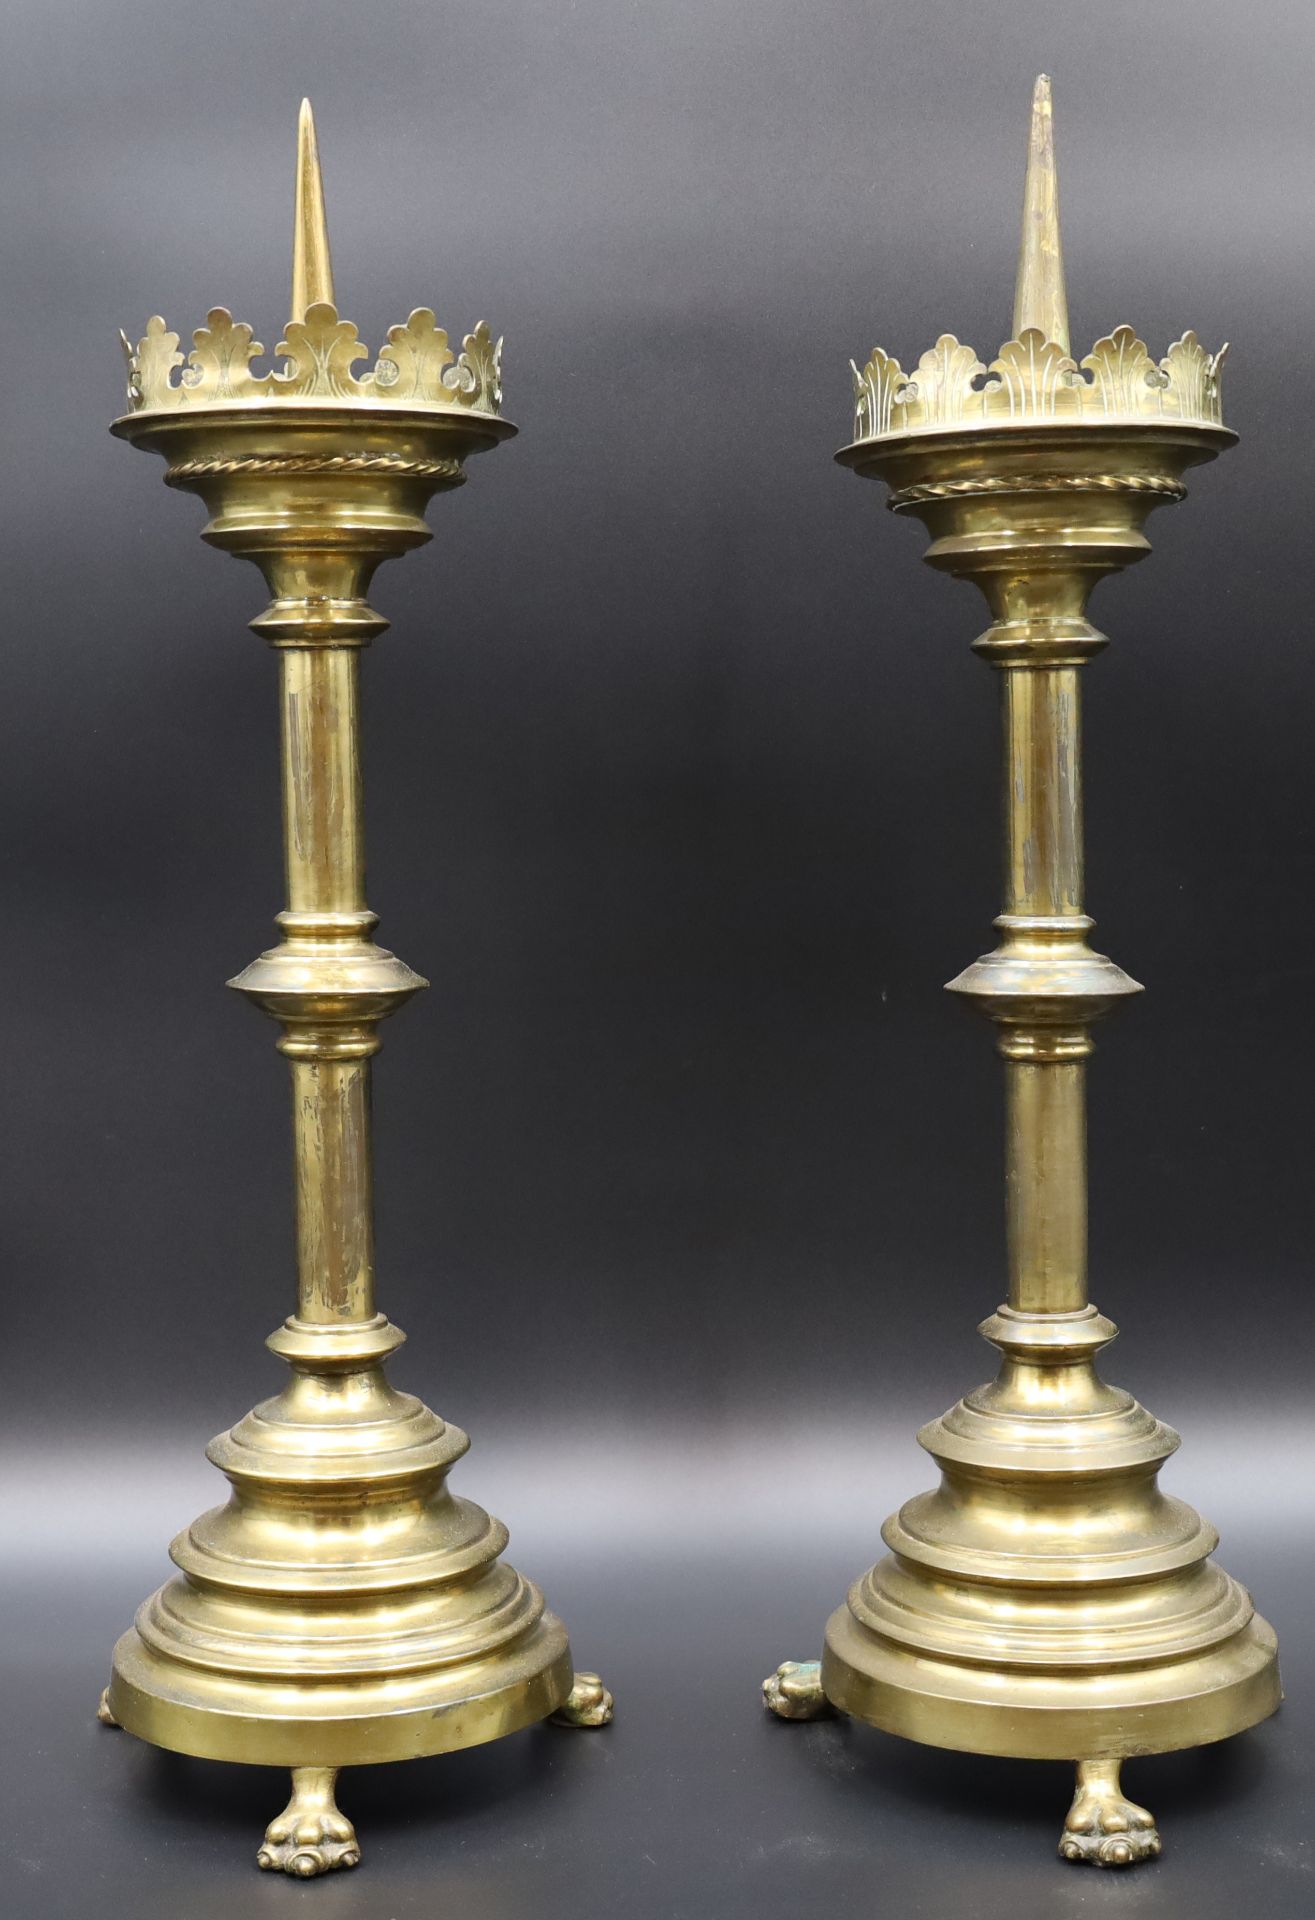 Two altar candlesticks. Brass. Around 1900.